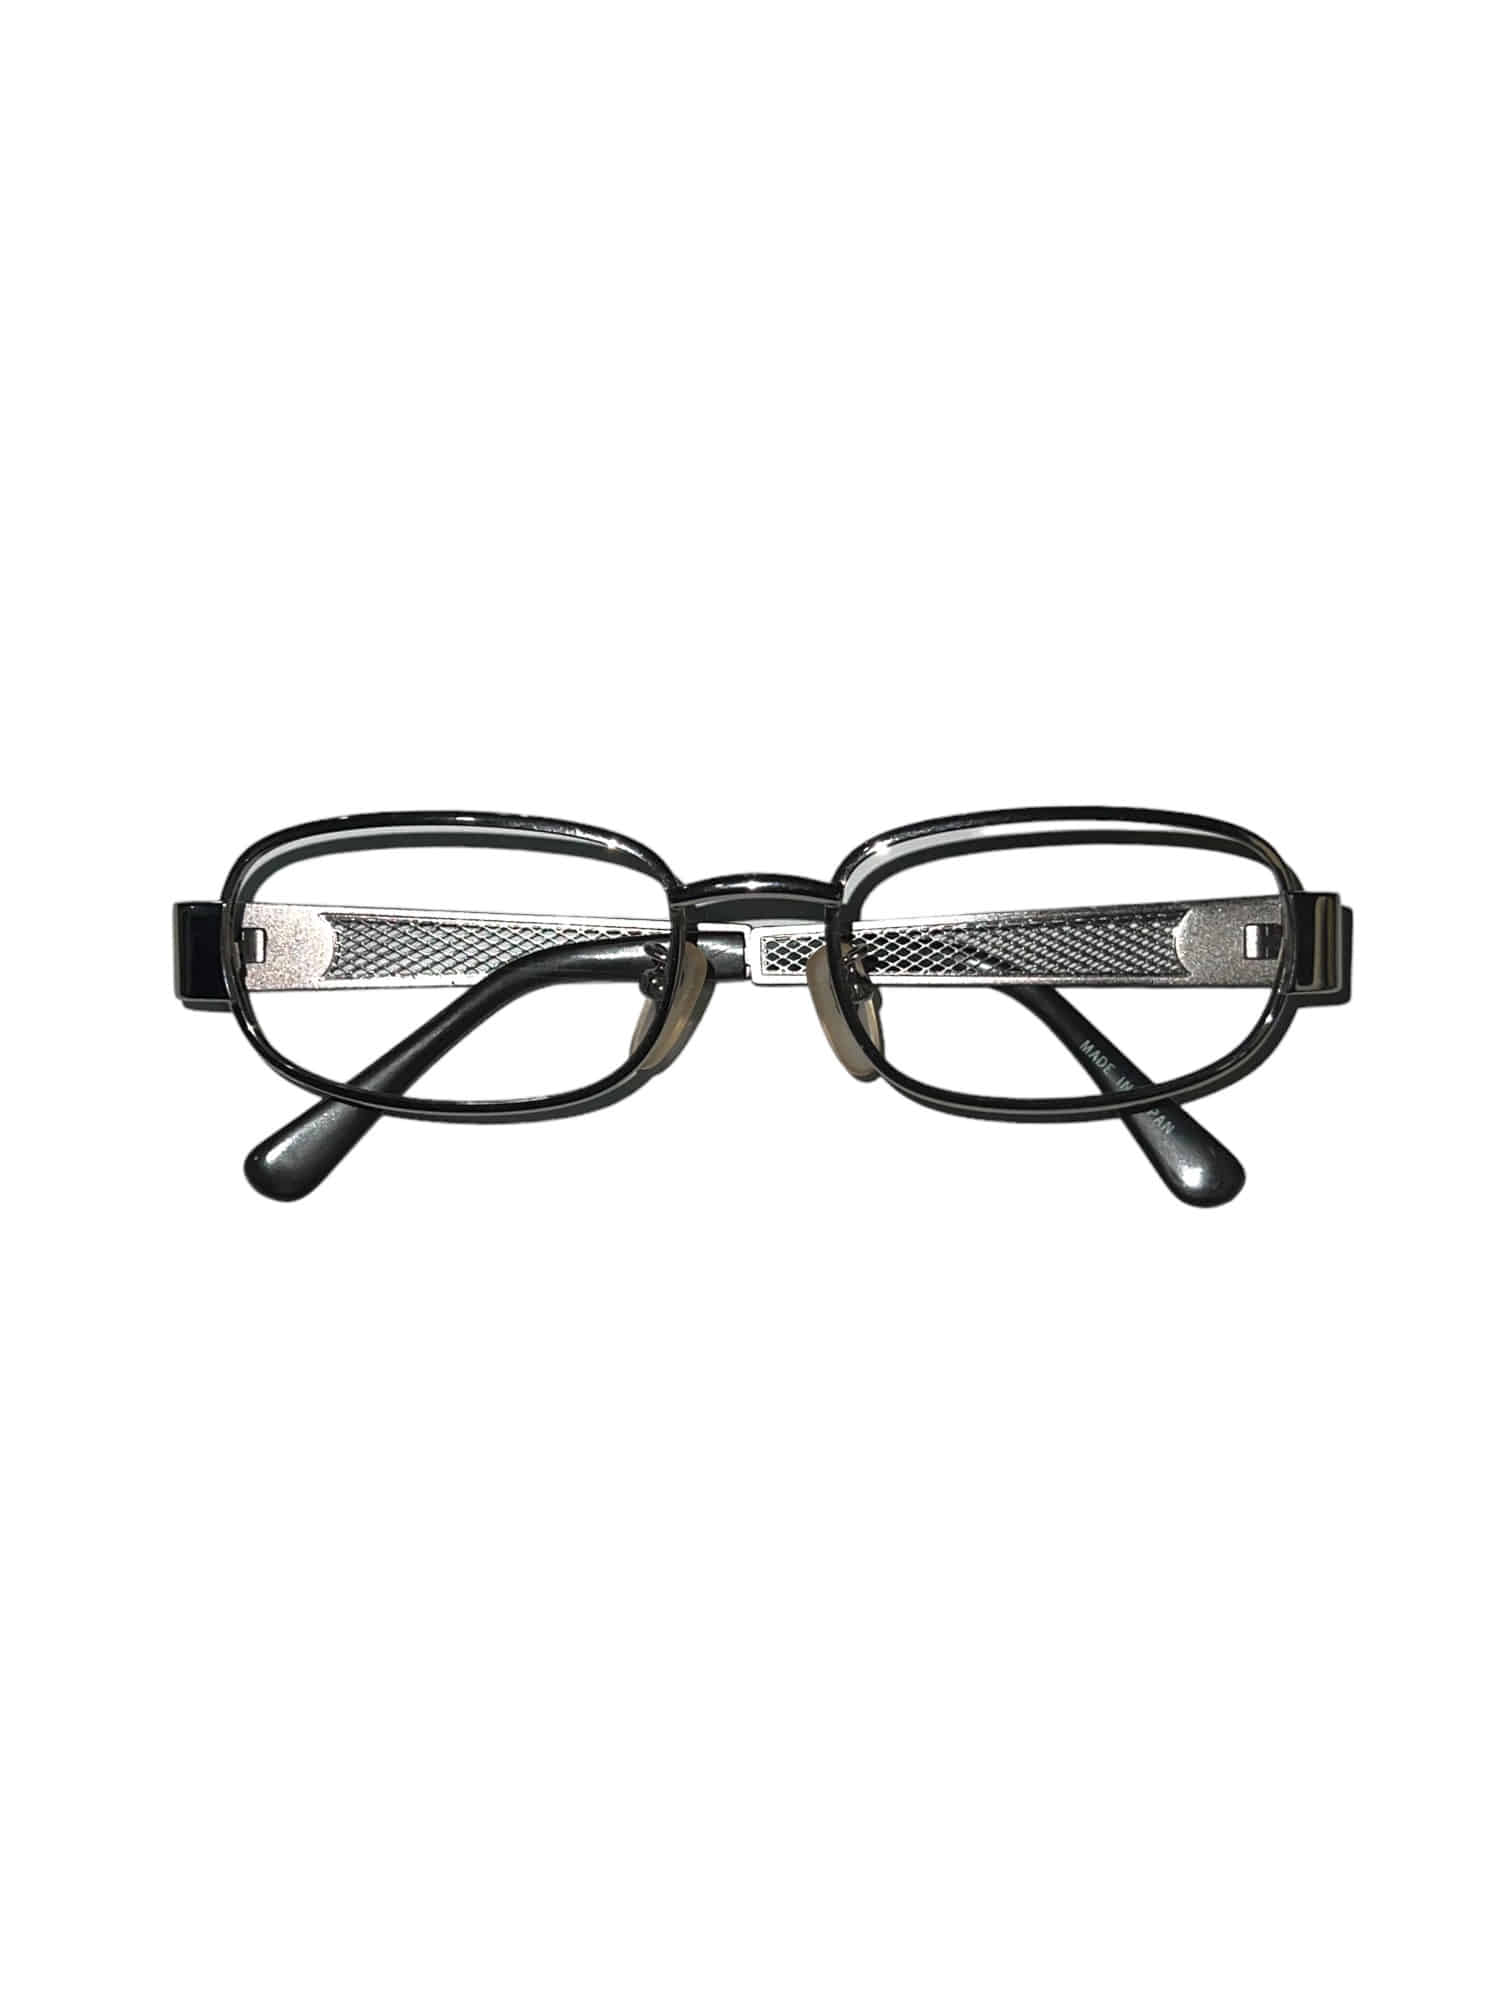 Vintage Steel Mesh Frame Glasses